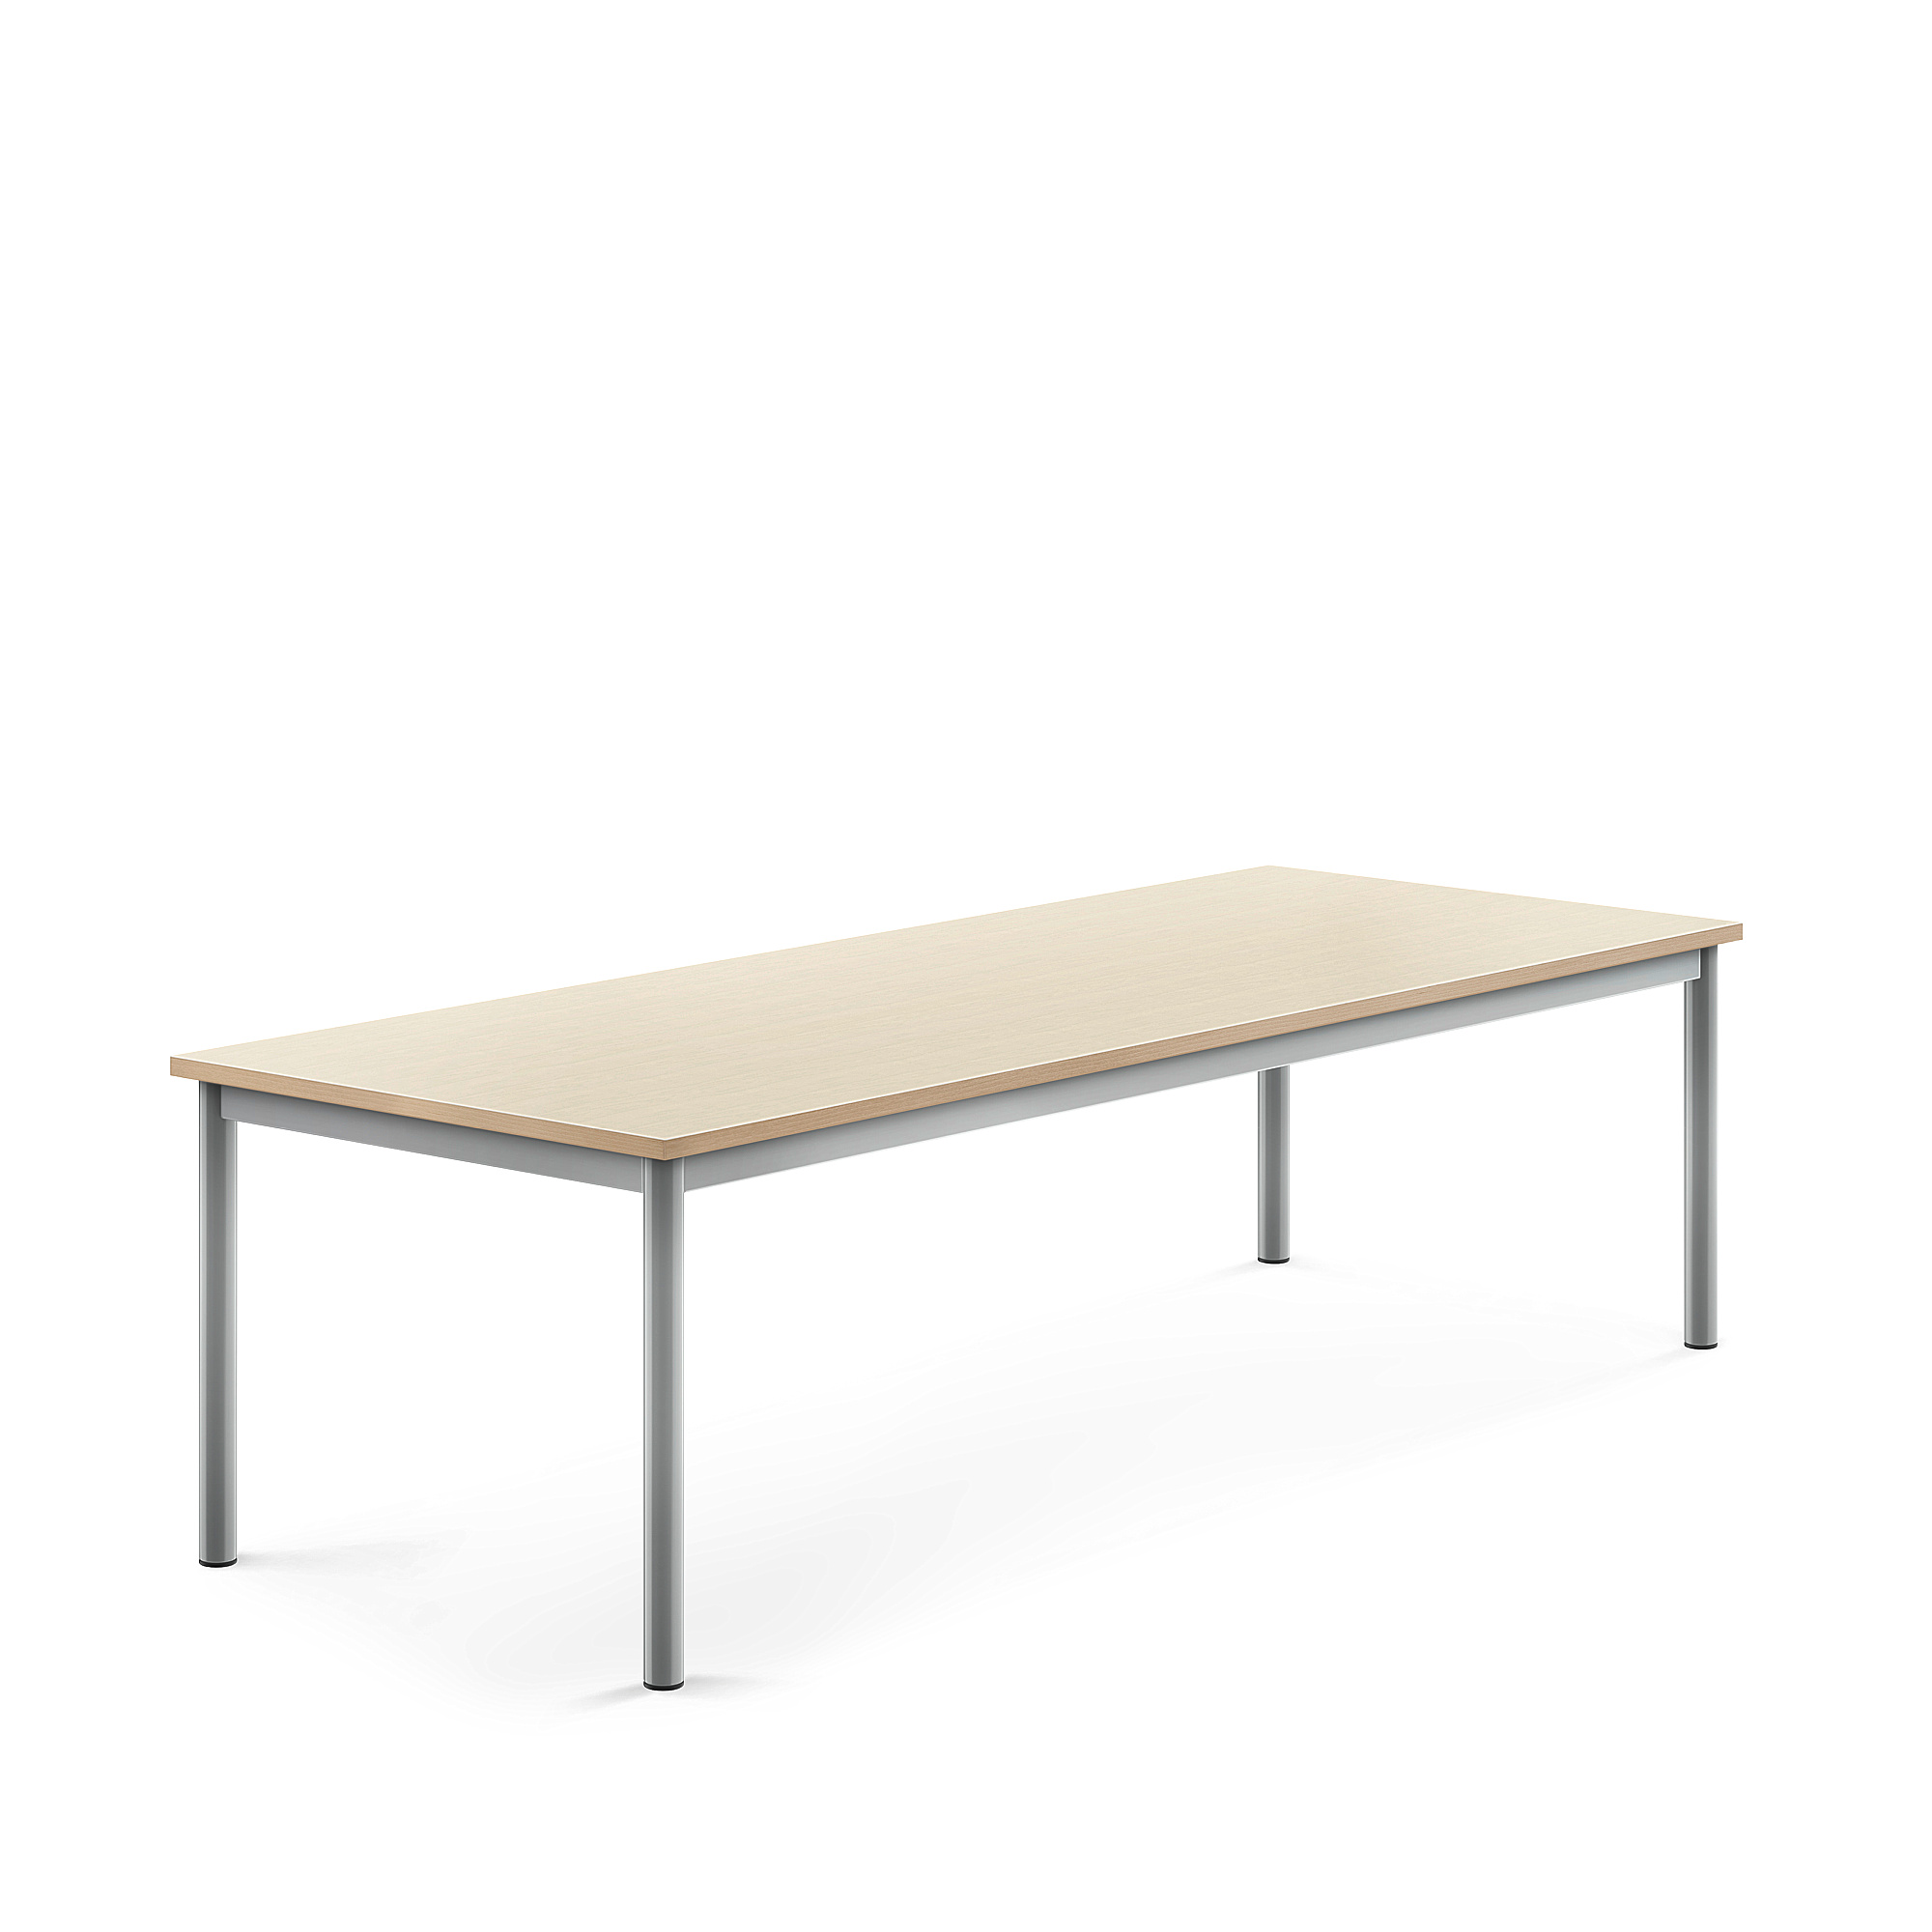 Stůl BORÅS, 1800x700x500 mm, stříbrné nohy, HPL deska, bříza